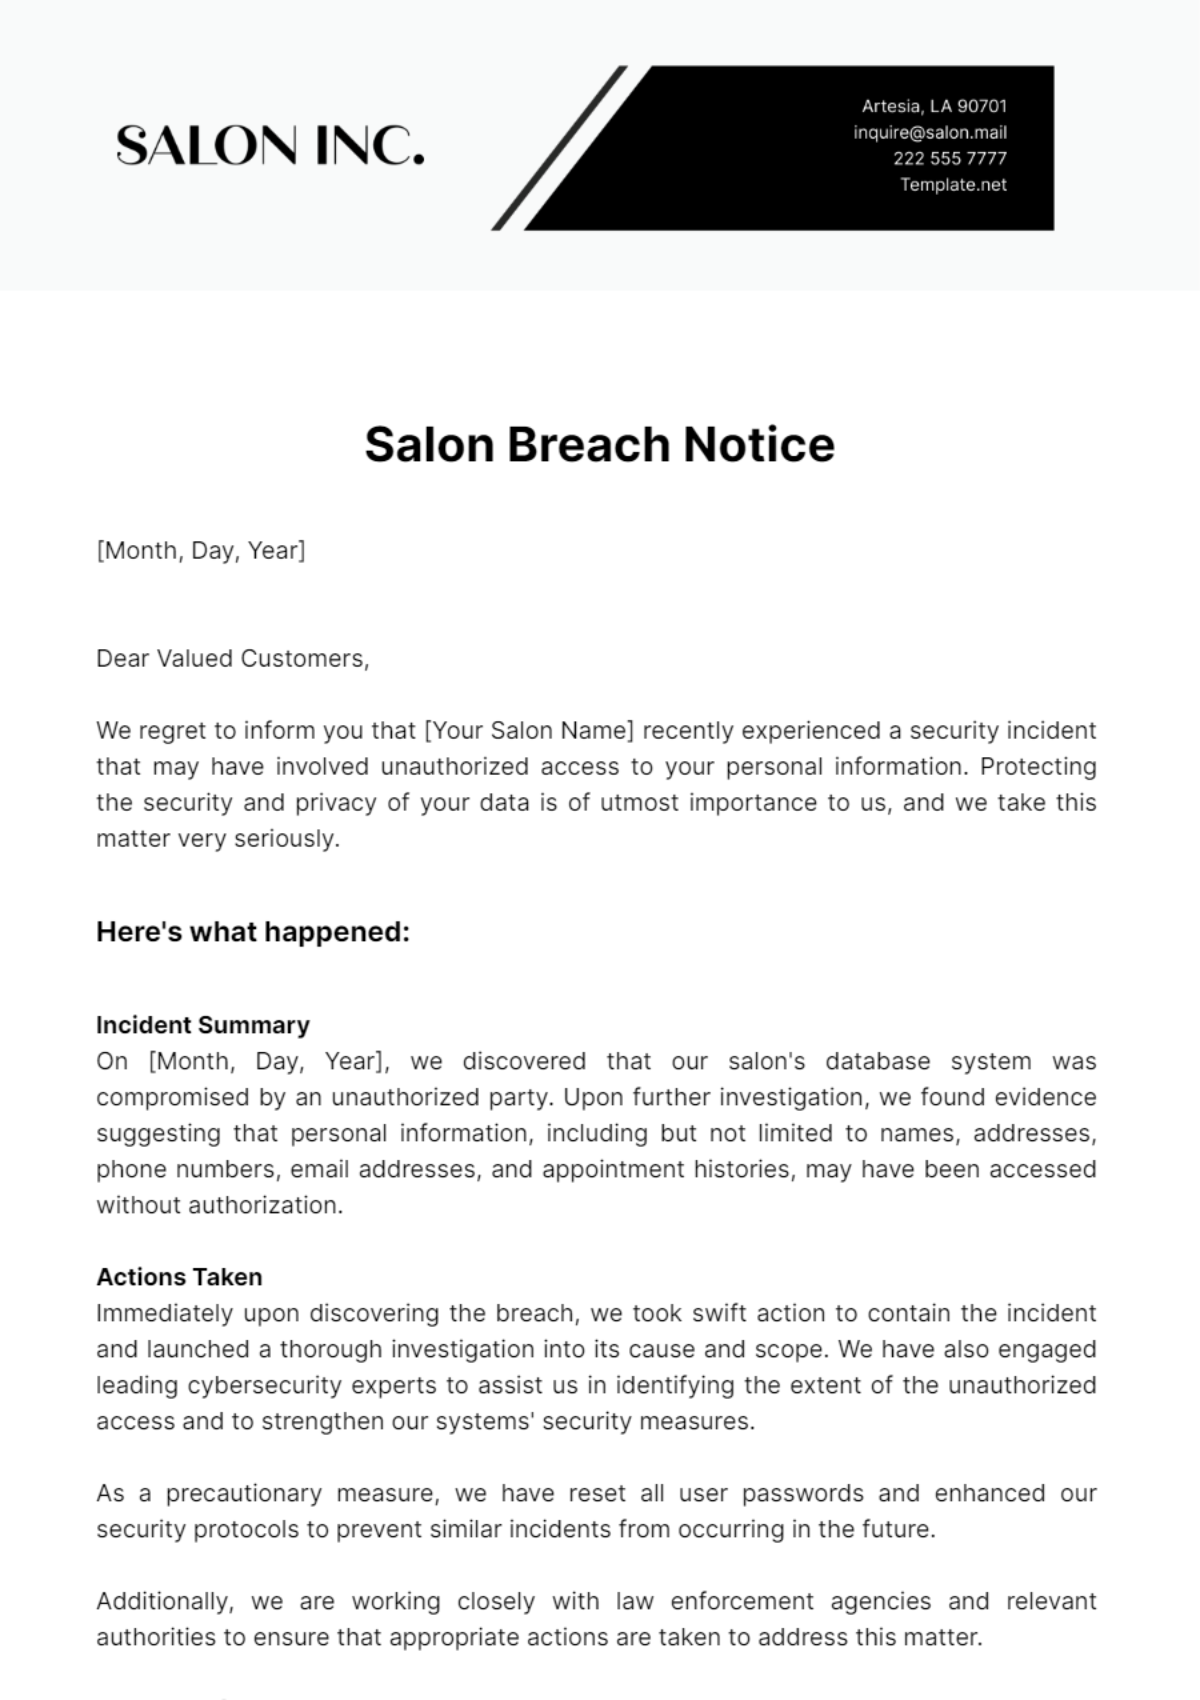 Salon Breach Notice Template